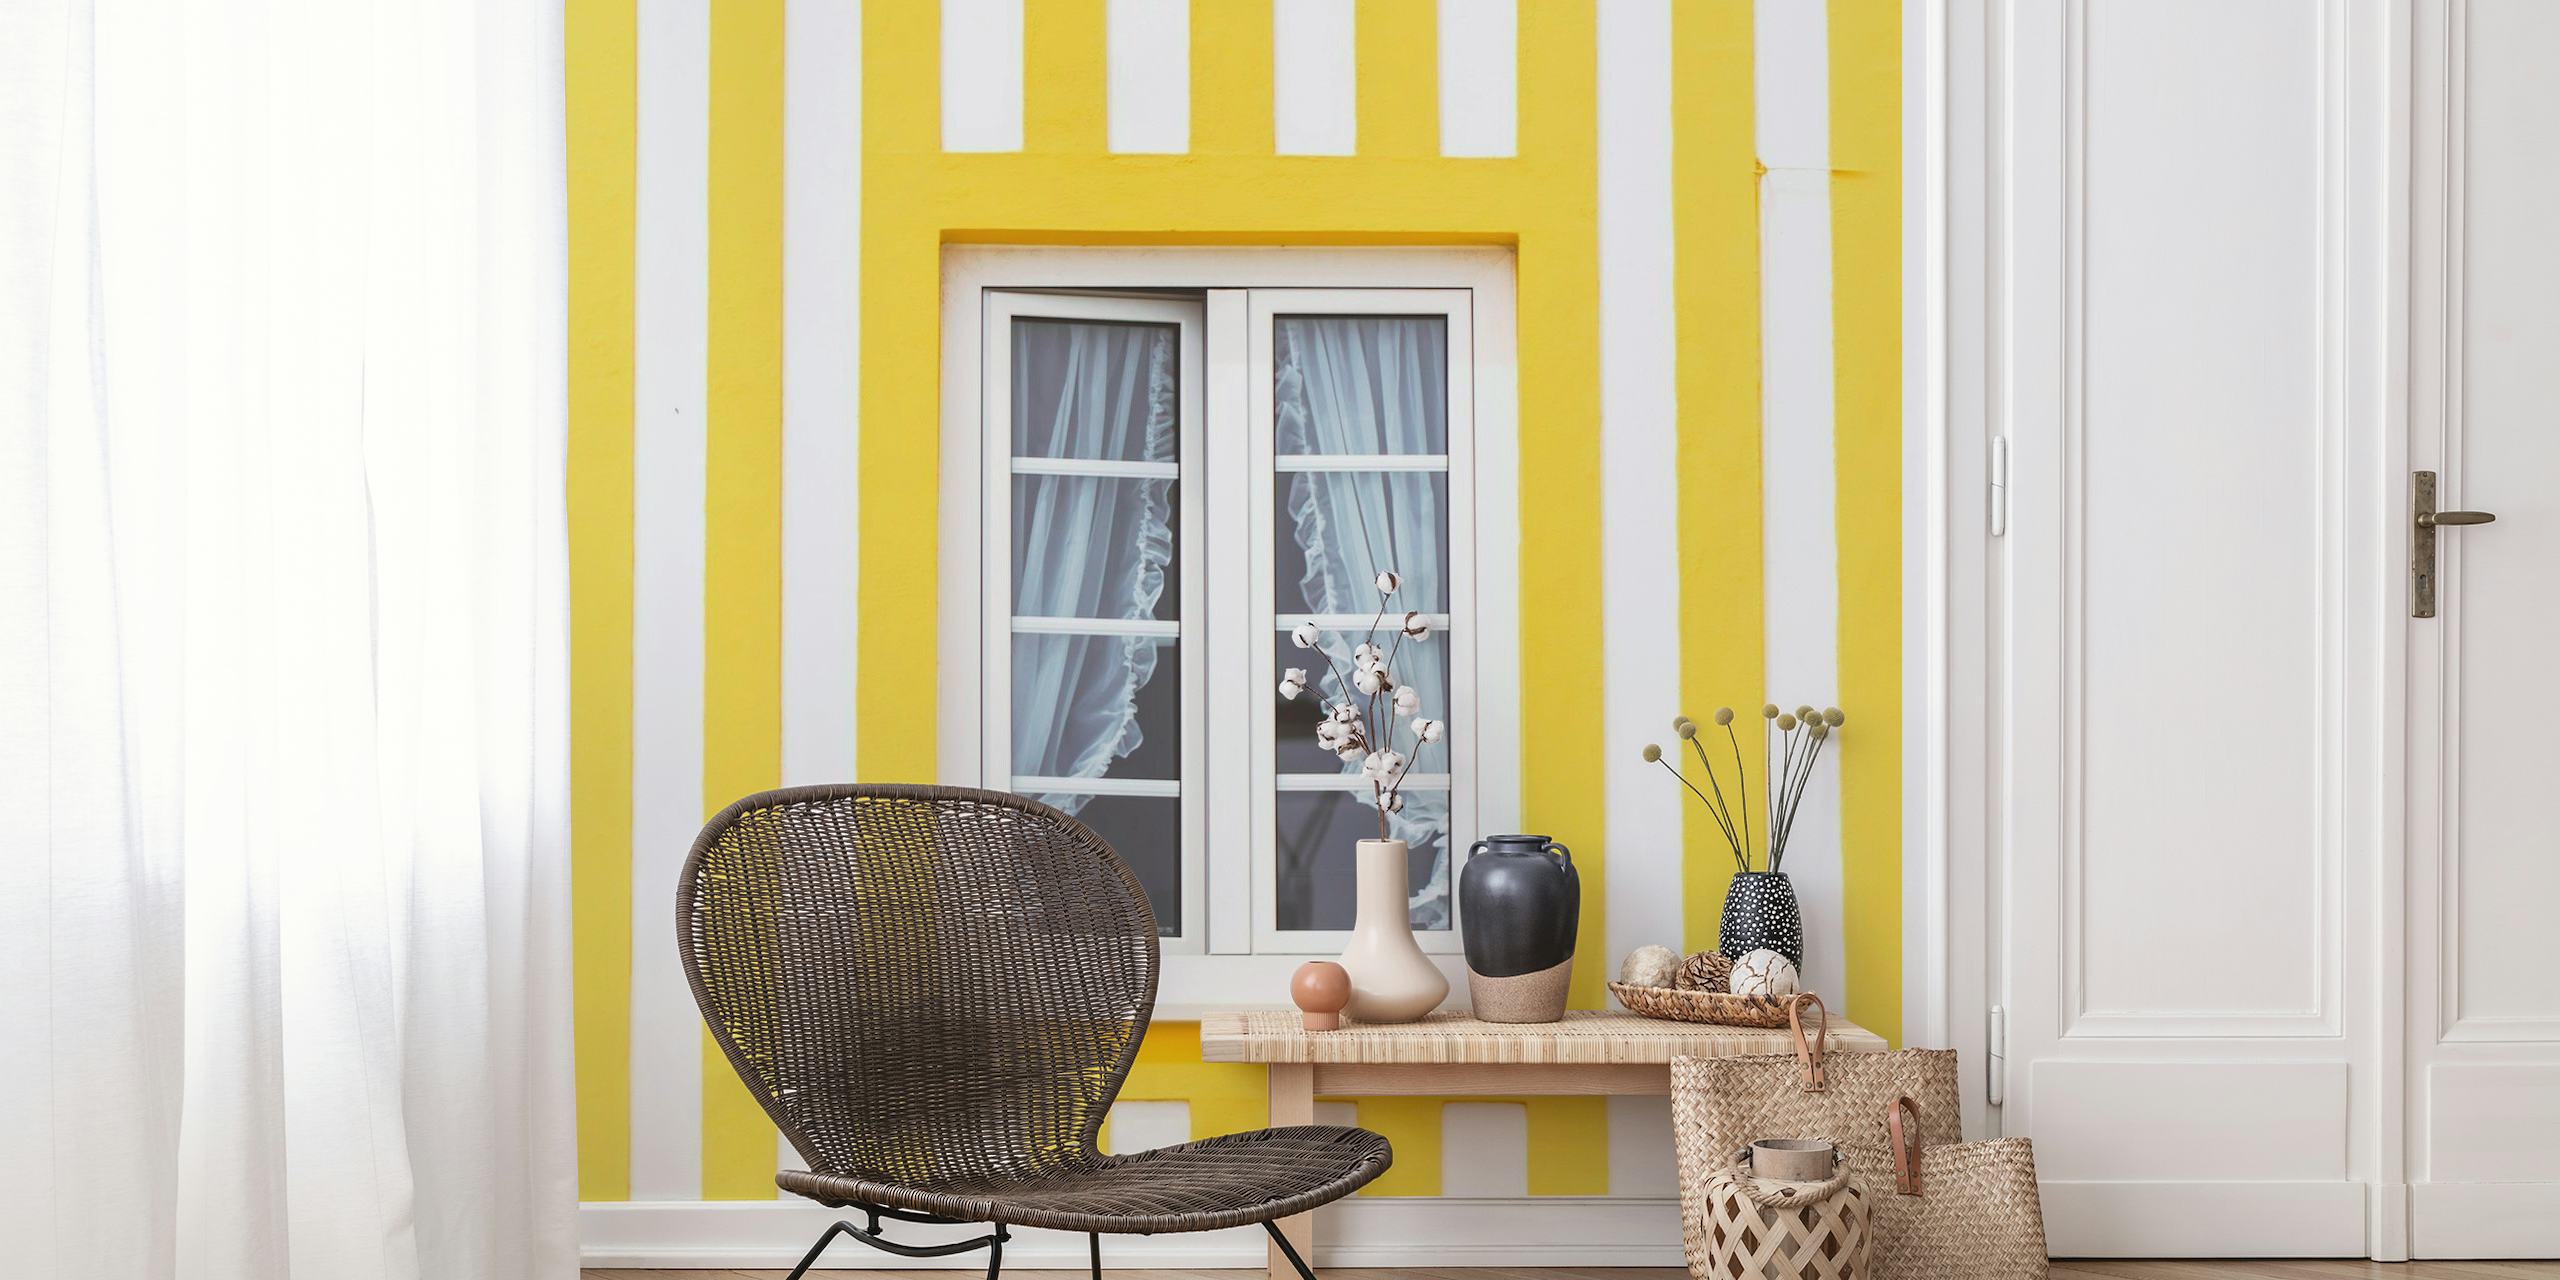 Papier peint à rayures jaunes et blanches avec fenêtre centrée